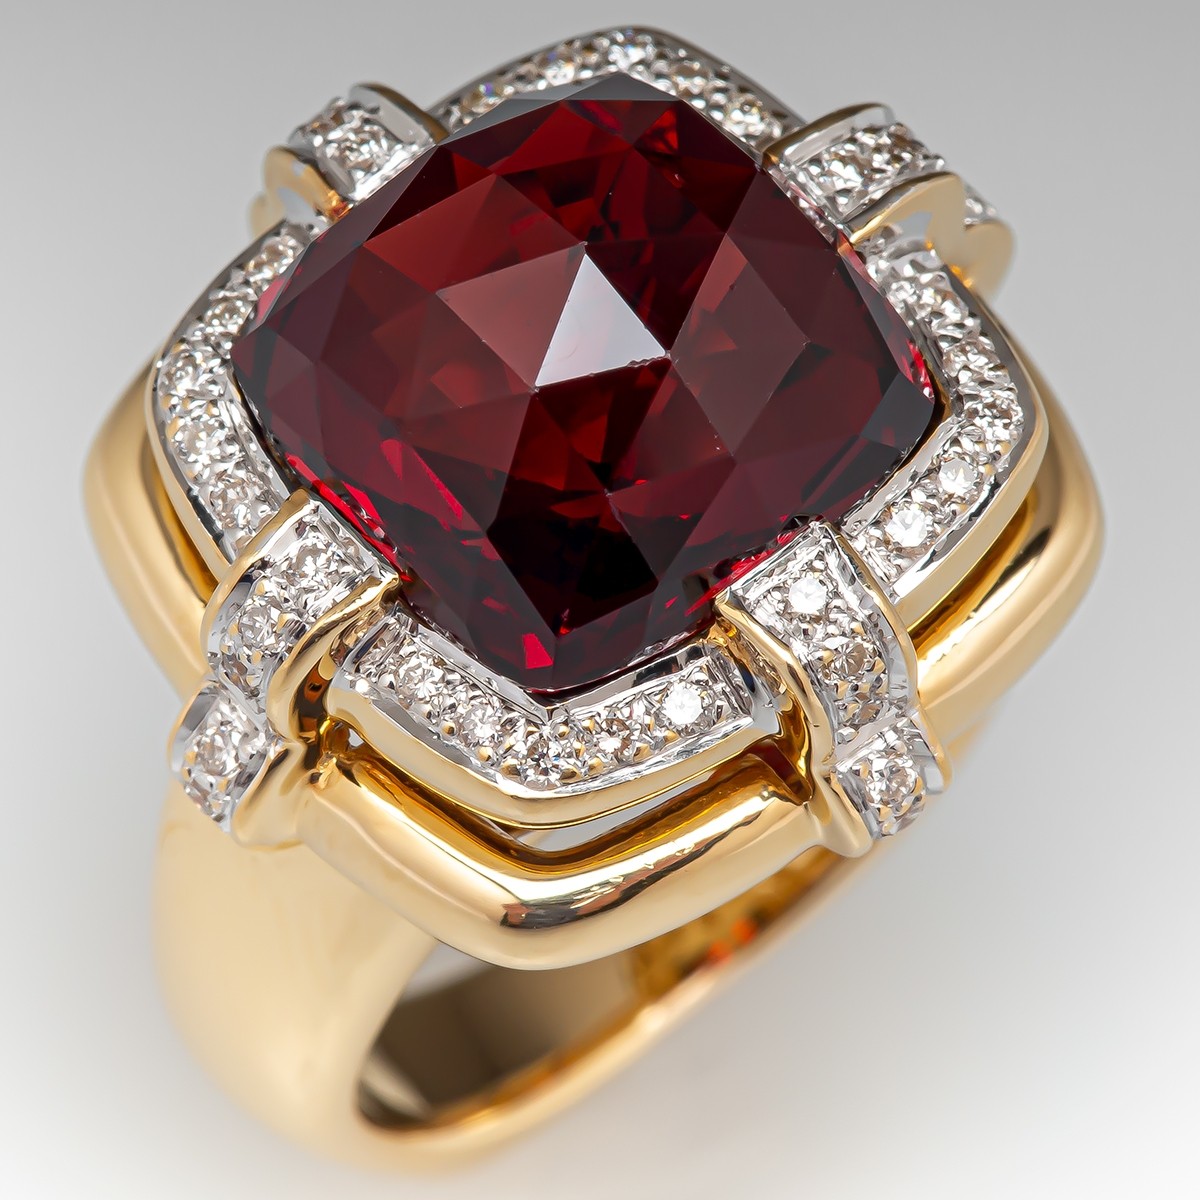 Irreplaceable Anholdelse Sæson Rose Cut Garnet Cocktail Ring w/ Diamonds 18K Gold